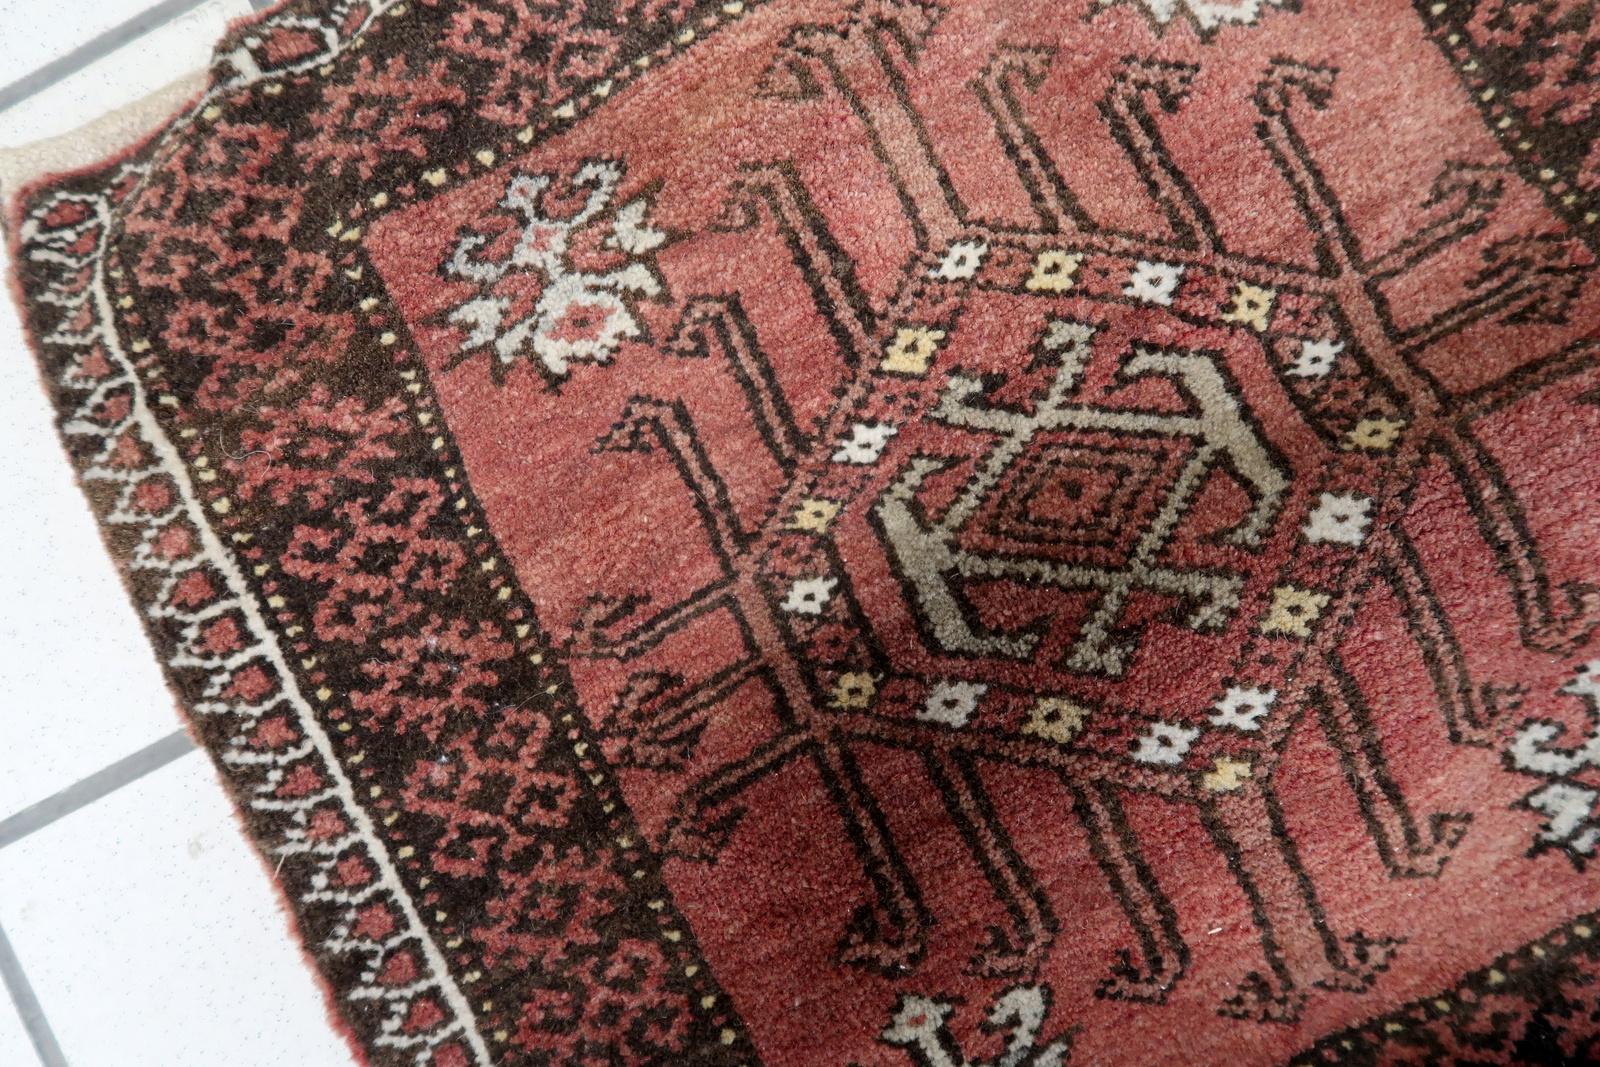 Sacoche de selle Baluch afghane ancienne faite à la main :

Design/One :
Cette sacoche rectangulaire témoigne du savoir-faire afghan.
Les couleurs dominantes sont les suivantes
Rouges profonds : ces tons chauds évoquent un sens de la tradition et de